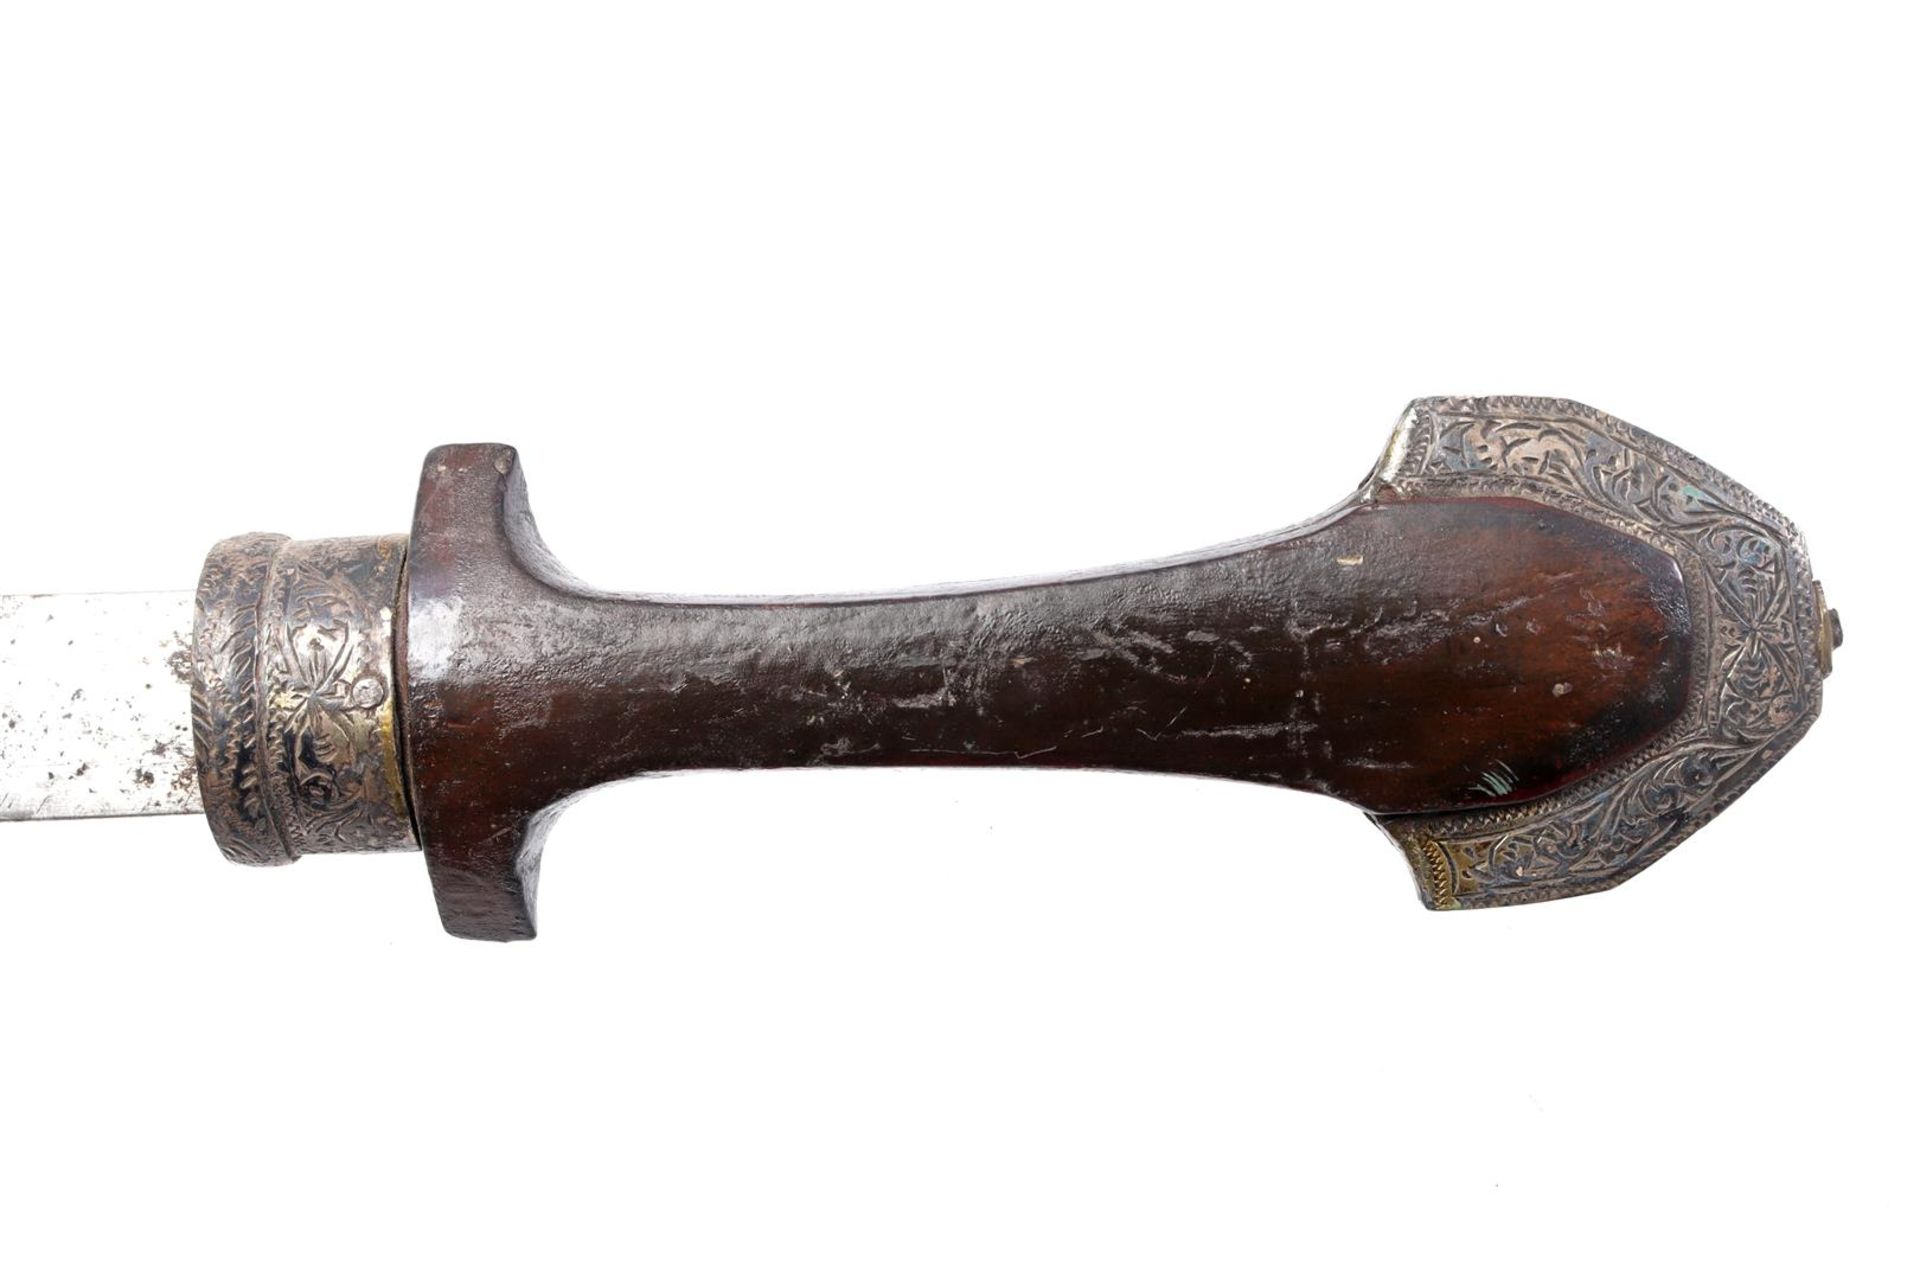 Koummya dagger - Image 2 of 5